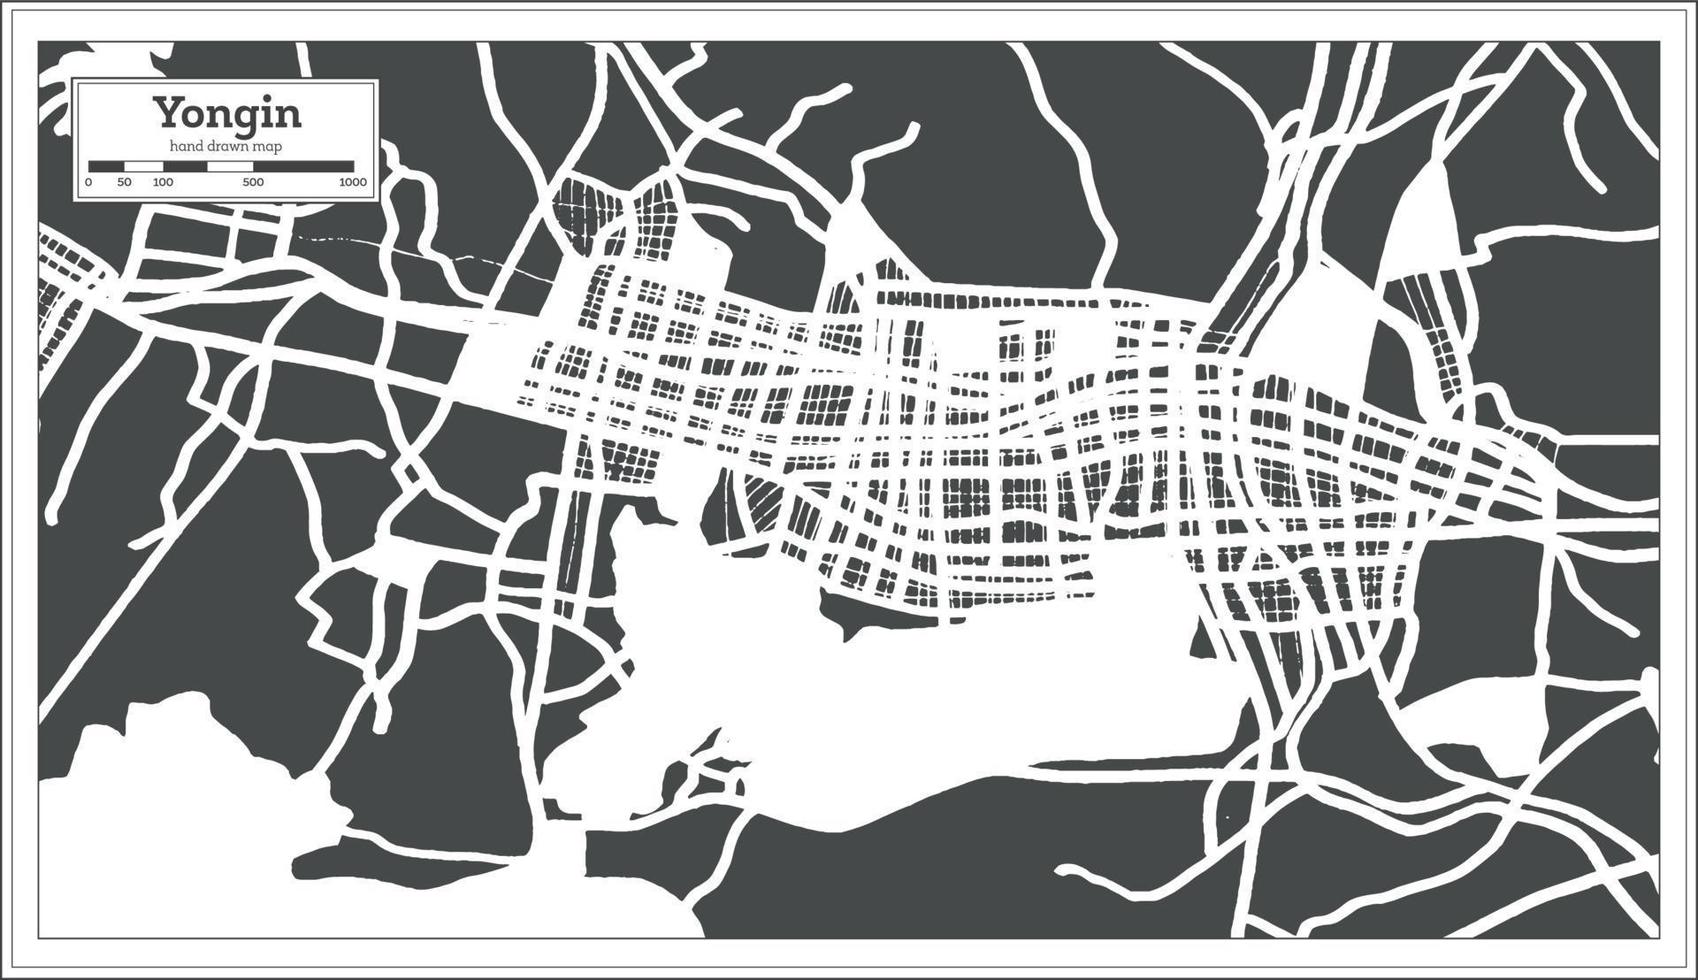 yongin söder korea stad Karta i retro stil. översikt Karta. vektor